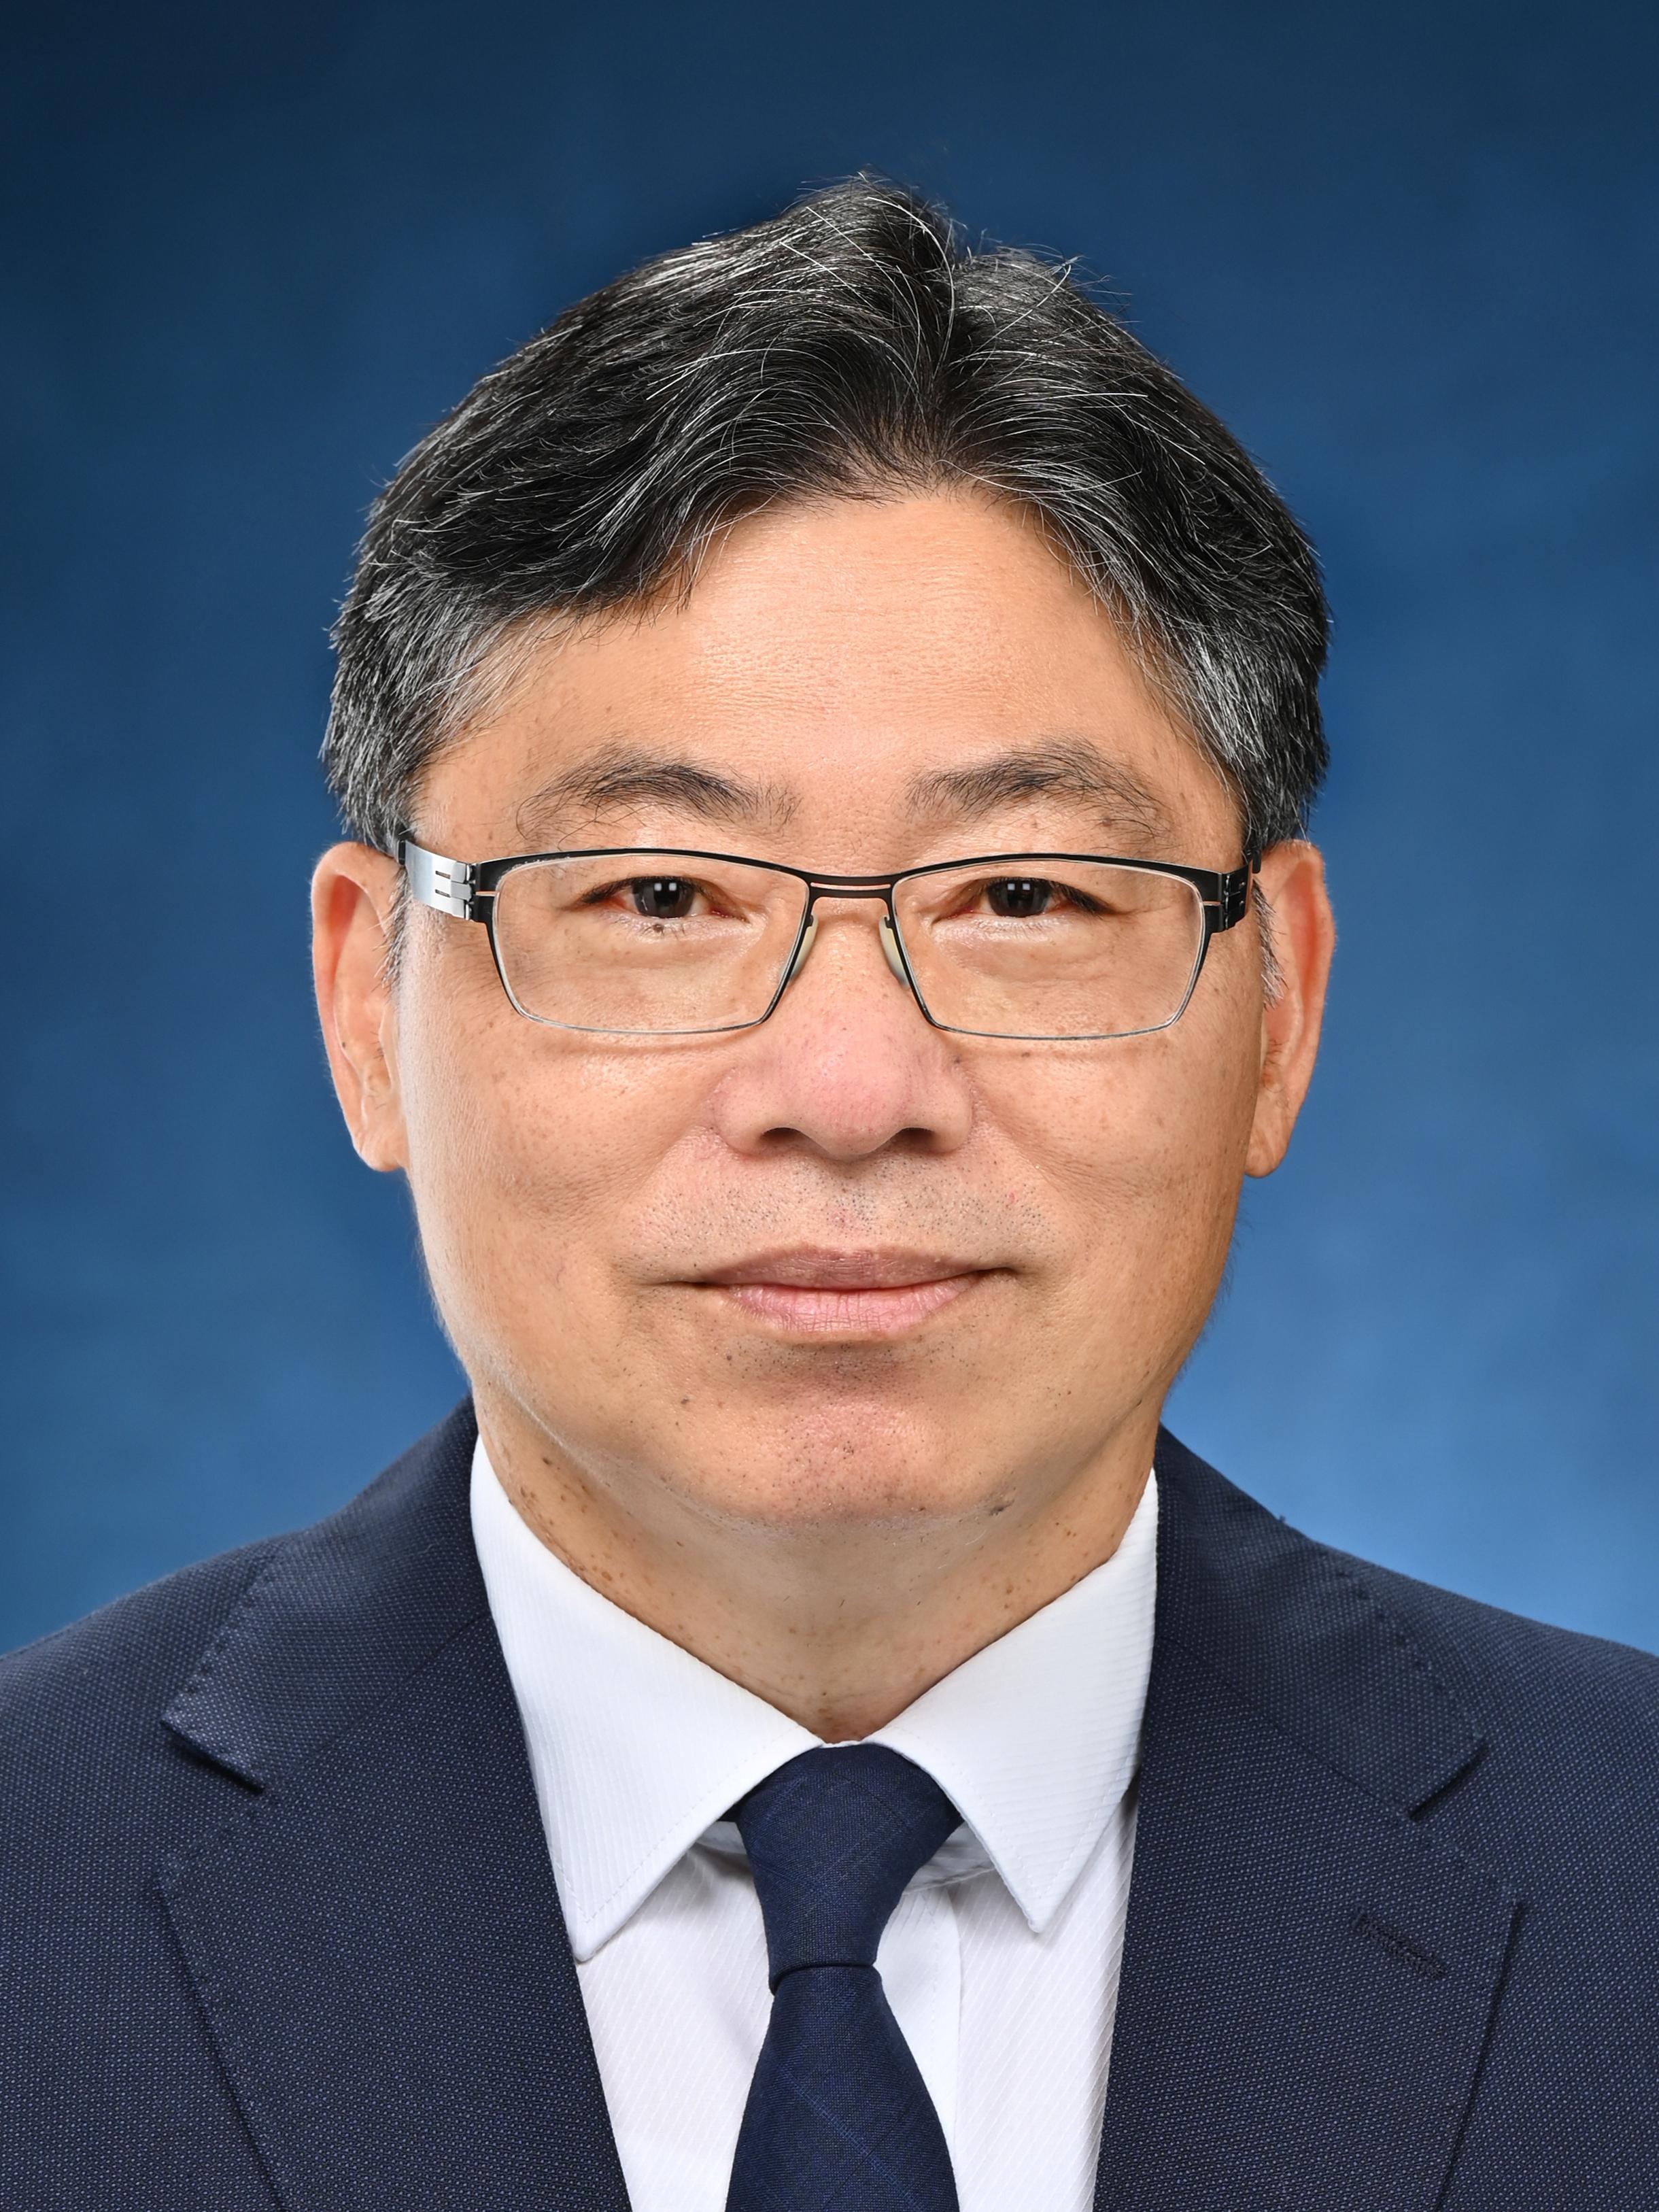 Secretary for Transport and Logistics (designate), Mr Lam Sai-hung.